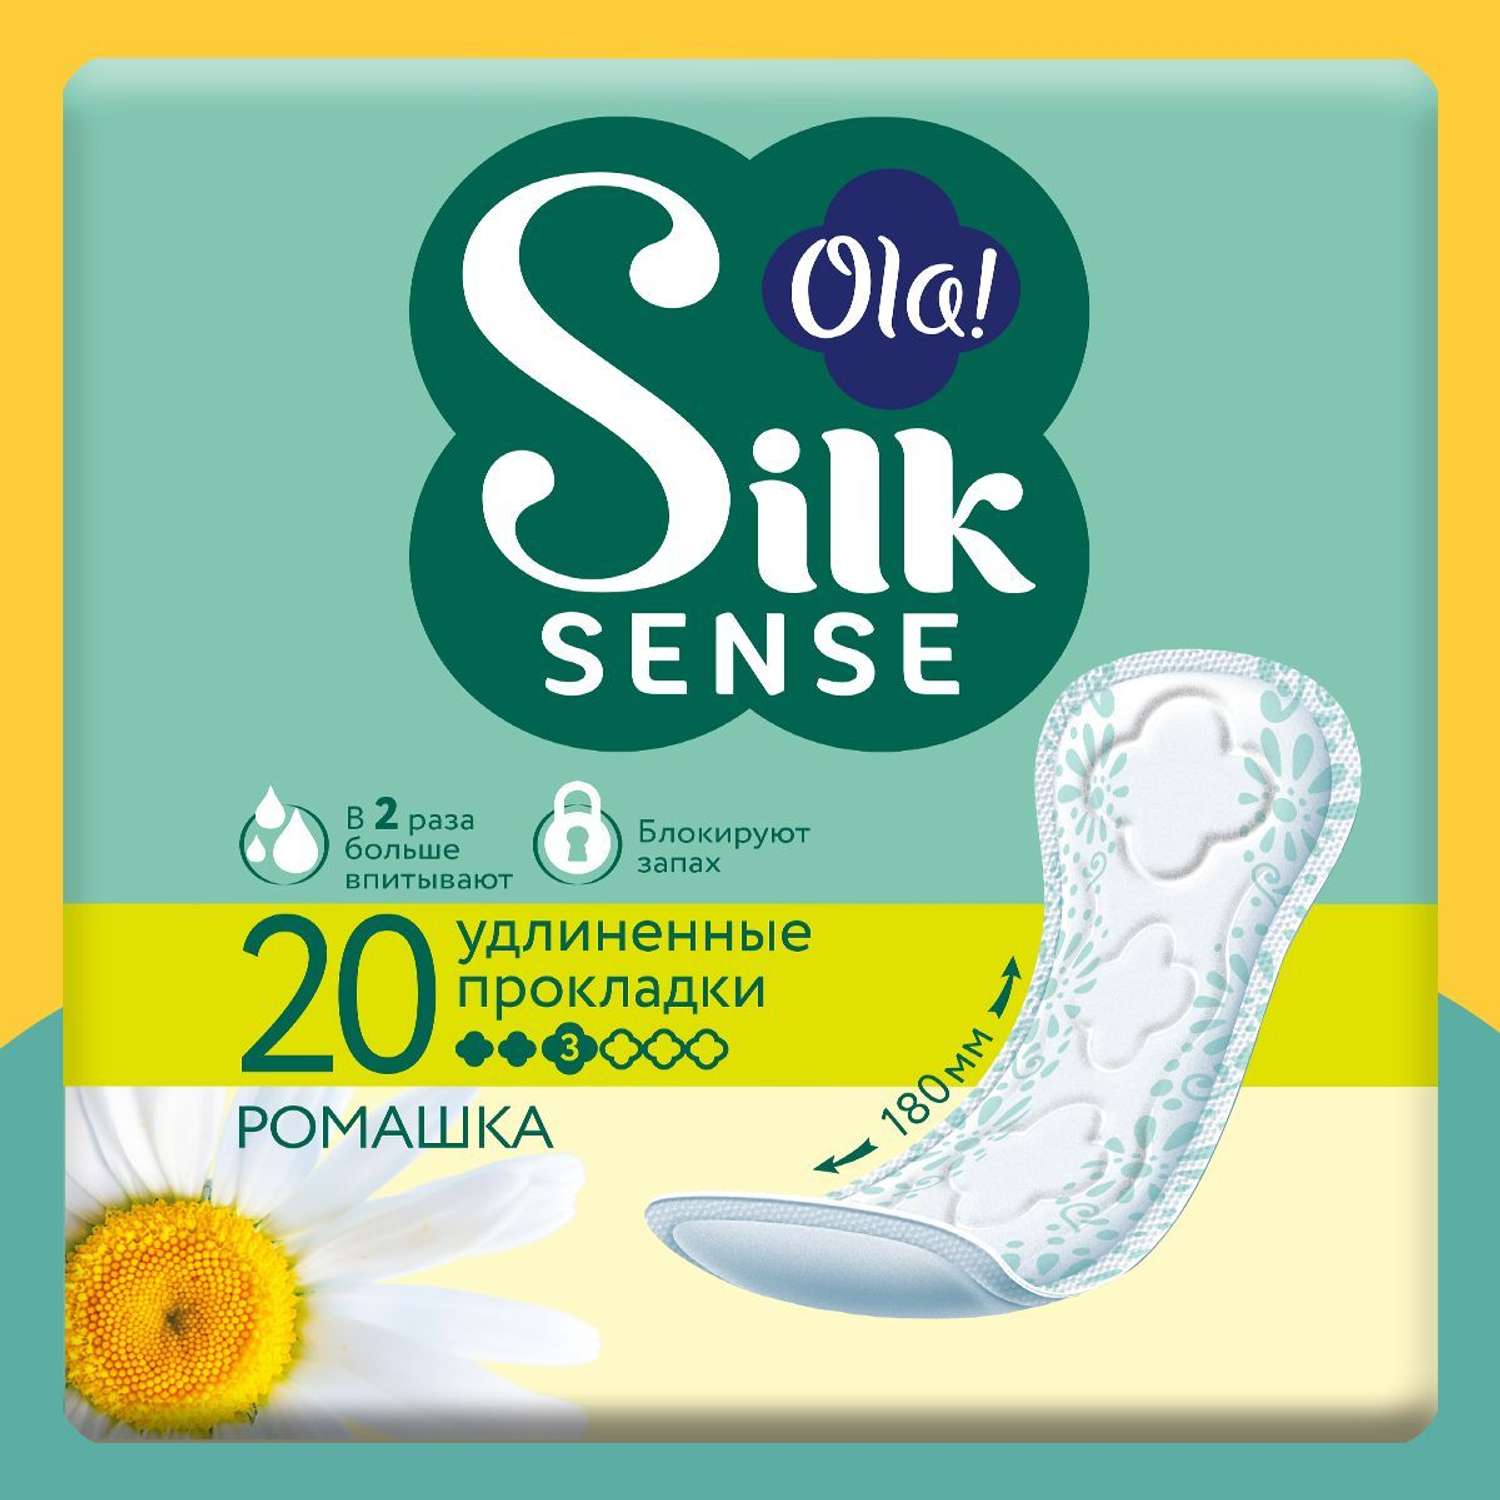 Ежедневные прокладки Ola! Silk Sense удлиненные аромат Ромашка 60 шт 3 уп по 20 шт - фото 3